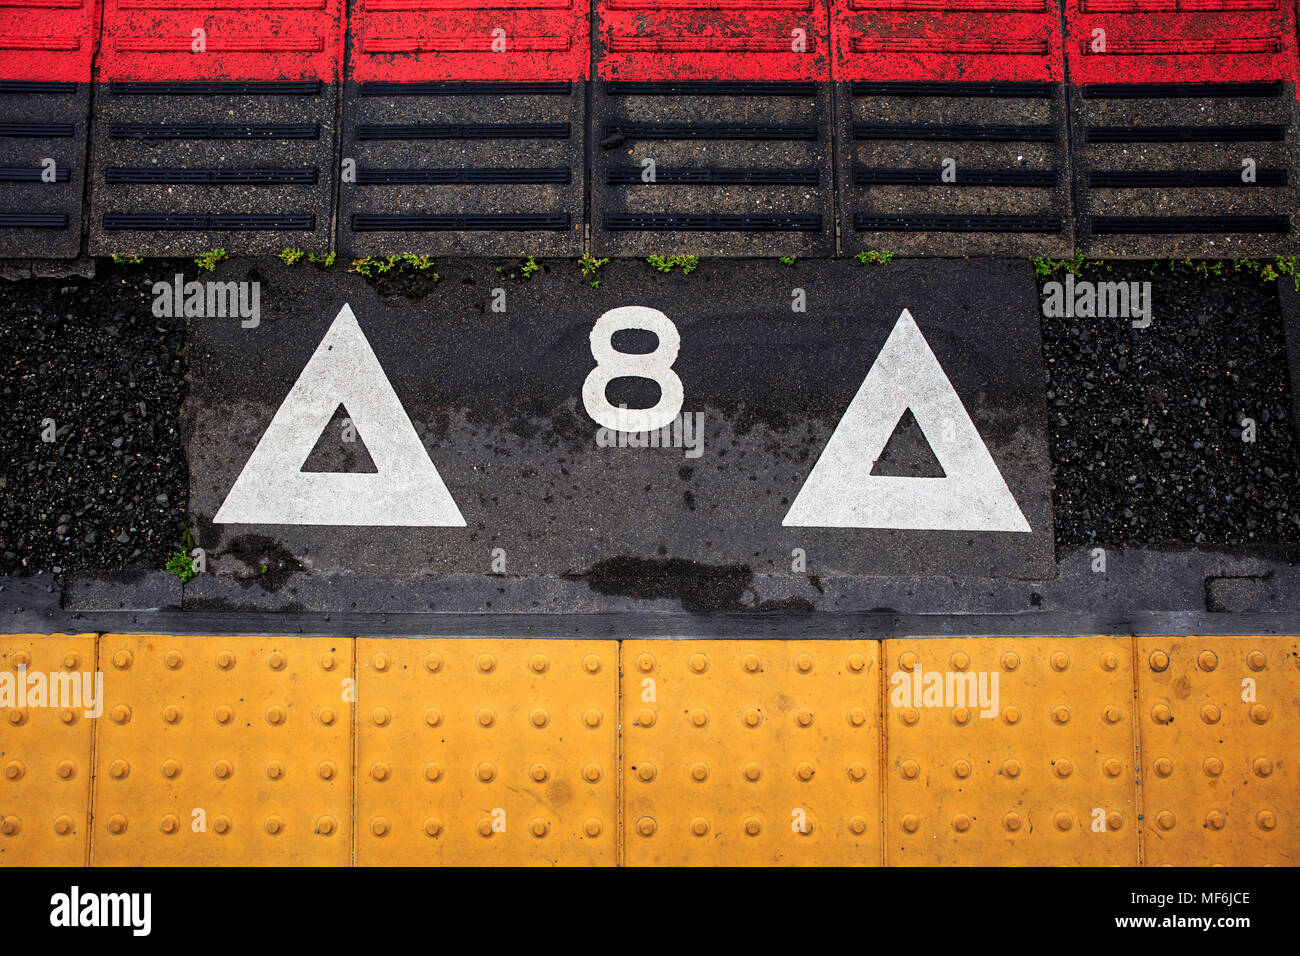 Taktile Boden Indikatoren im Boarding Punkt für Zug Auto Nummer 8 Stockfoto